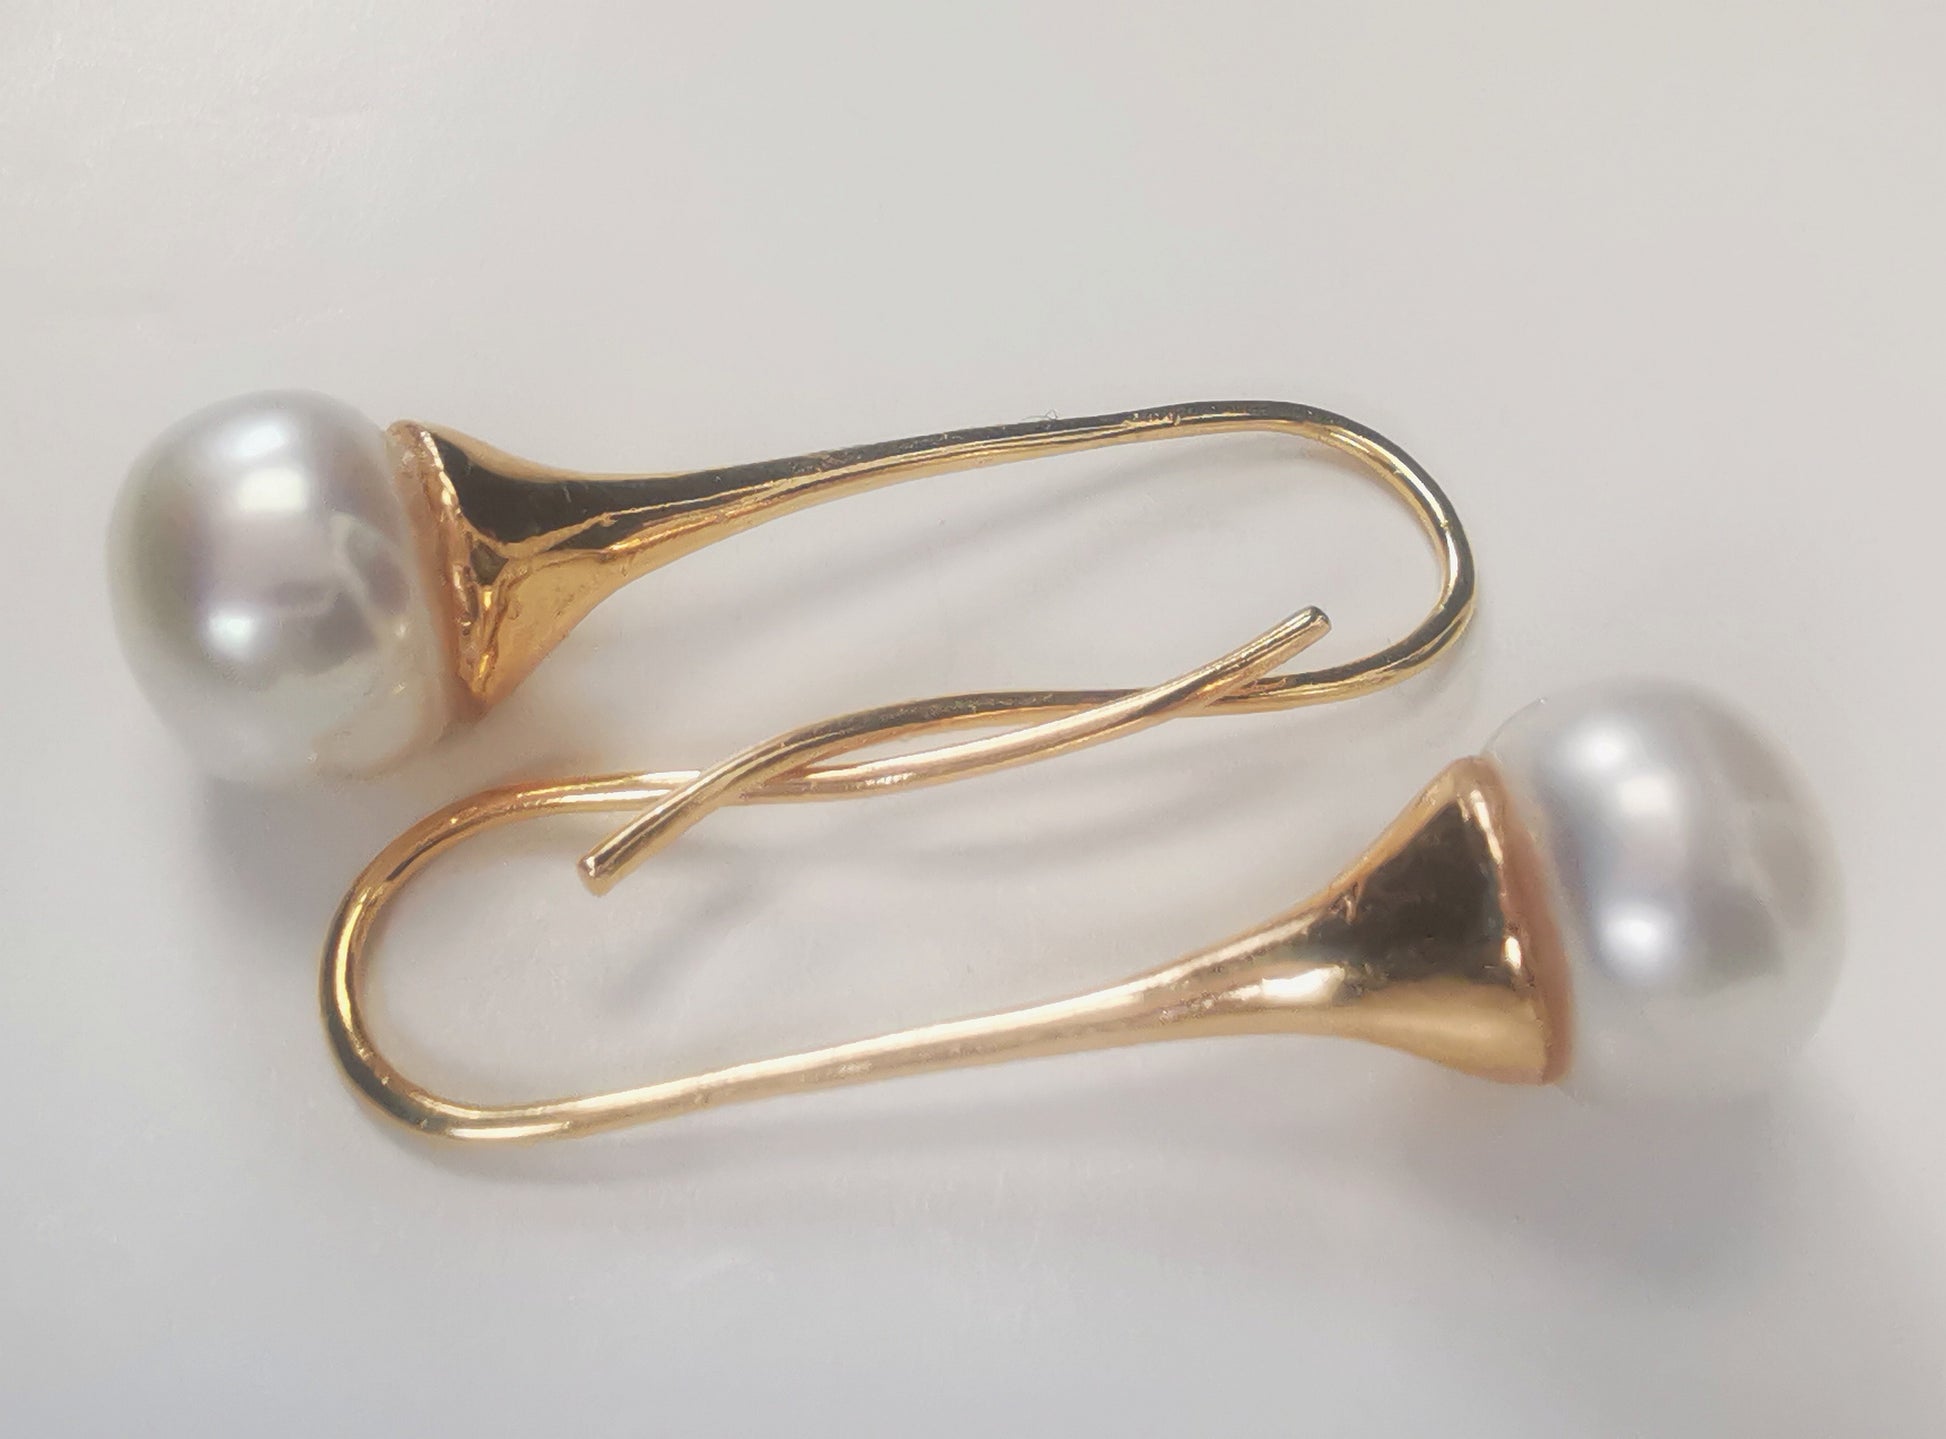 Boucles d'oreilles perles de culture blanches 9mm sur pendants longs plaqués or. Présentées horizontalement, boucle du dessus, perle à gauche pendant en bas, celle de dessous perle à droite pendant en haut, sur fond blanc. Vue de dessus.